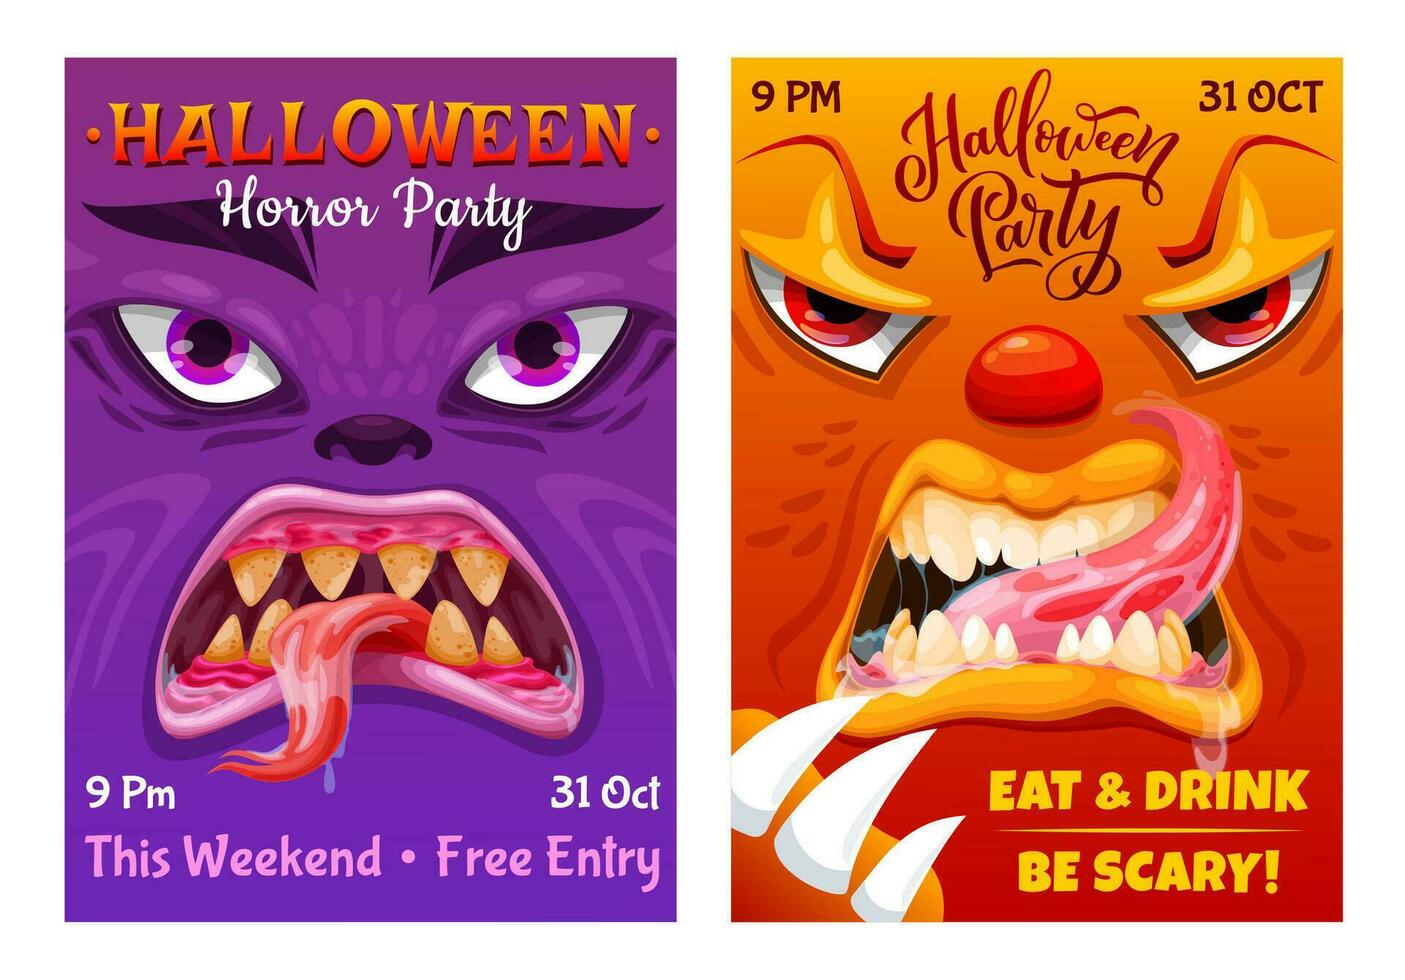 Halloween party flyer cartoon monster characters vector